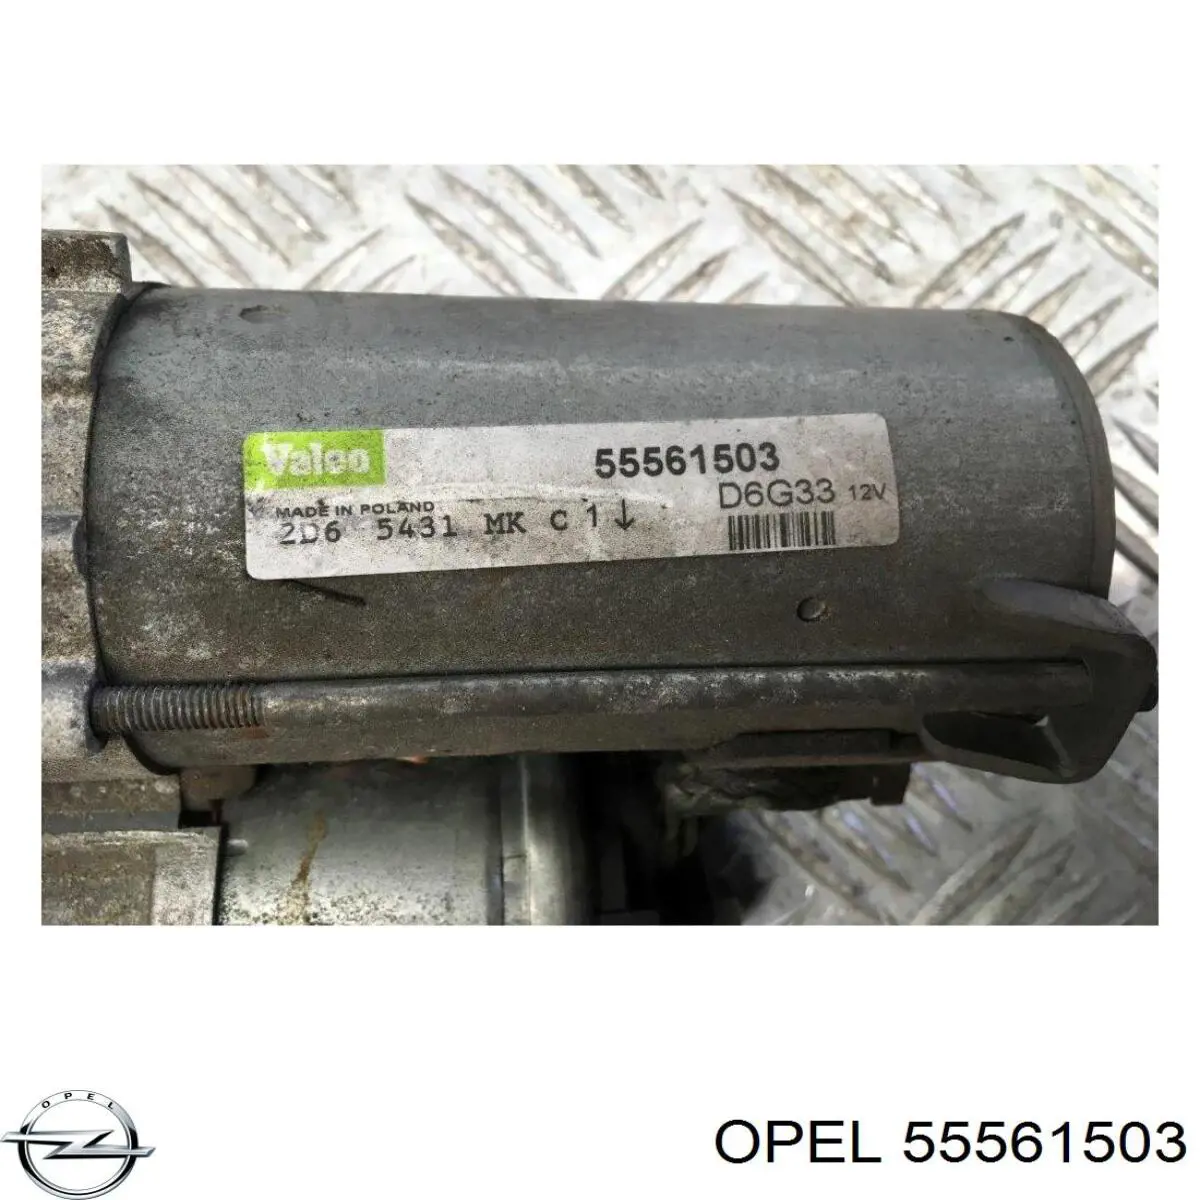 55561503 Opel motor de arranque